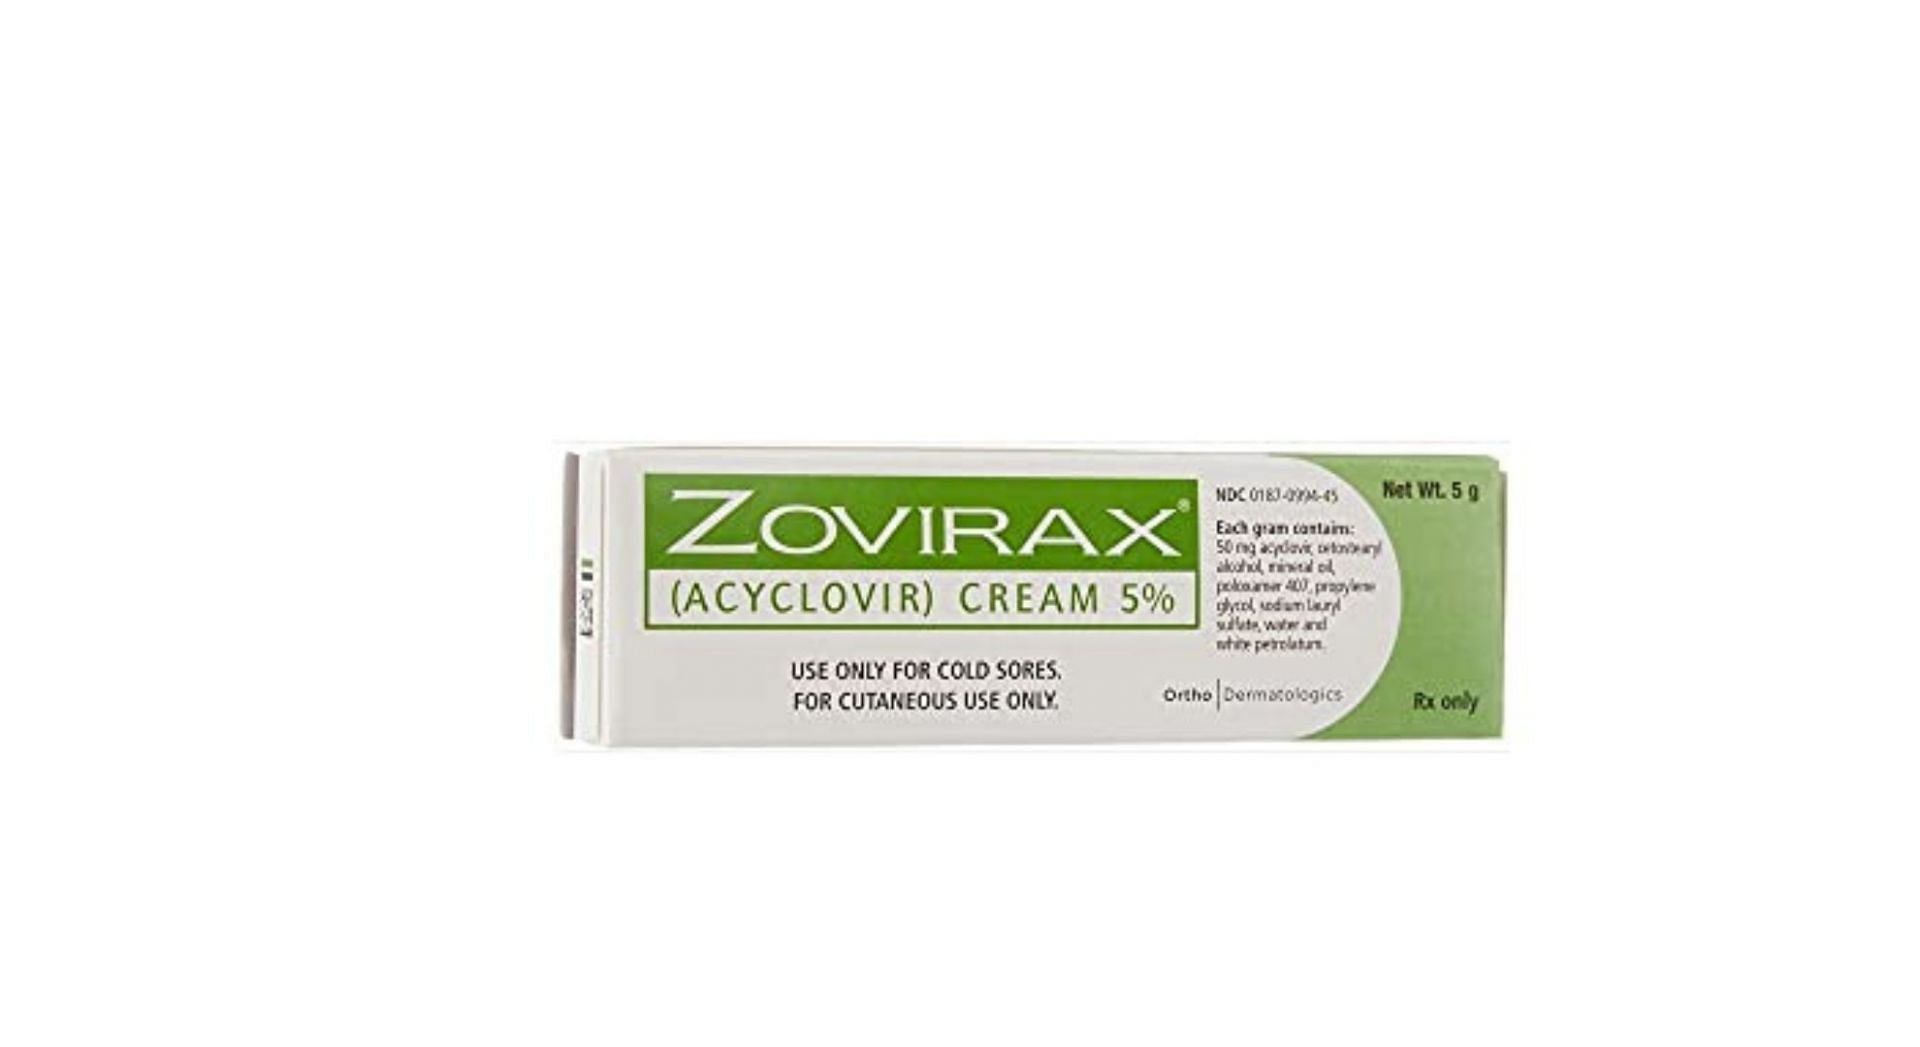 Zovirax (Acyclovir) 5% topical cream (Image via Amazon)